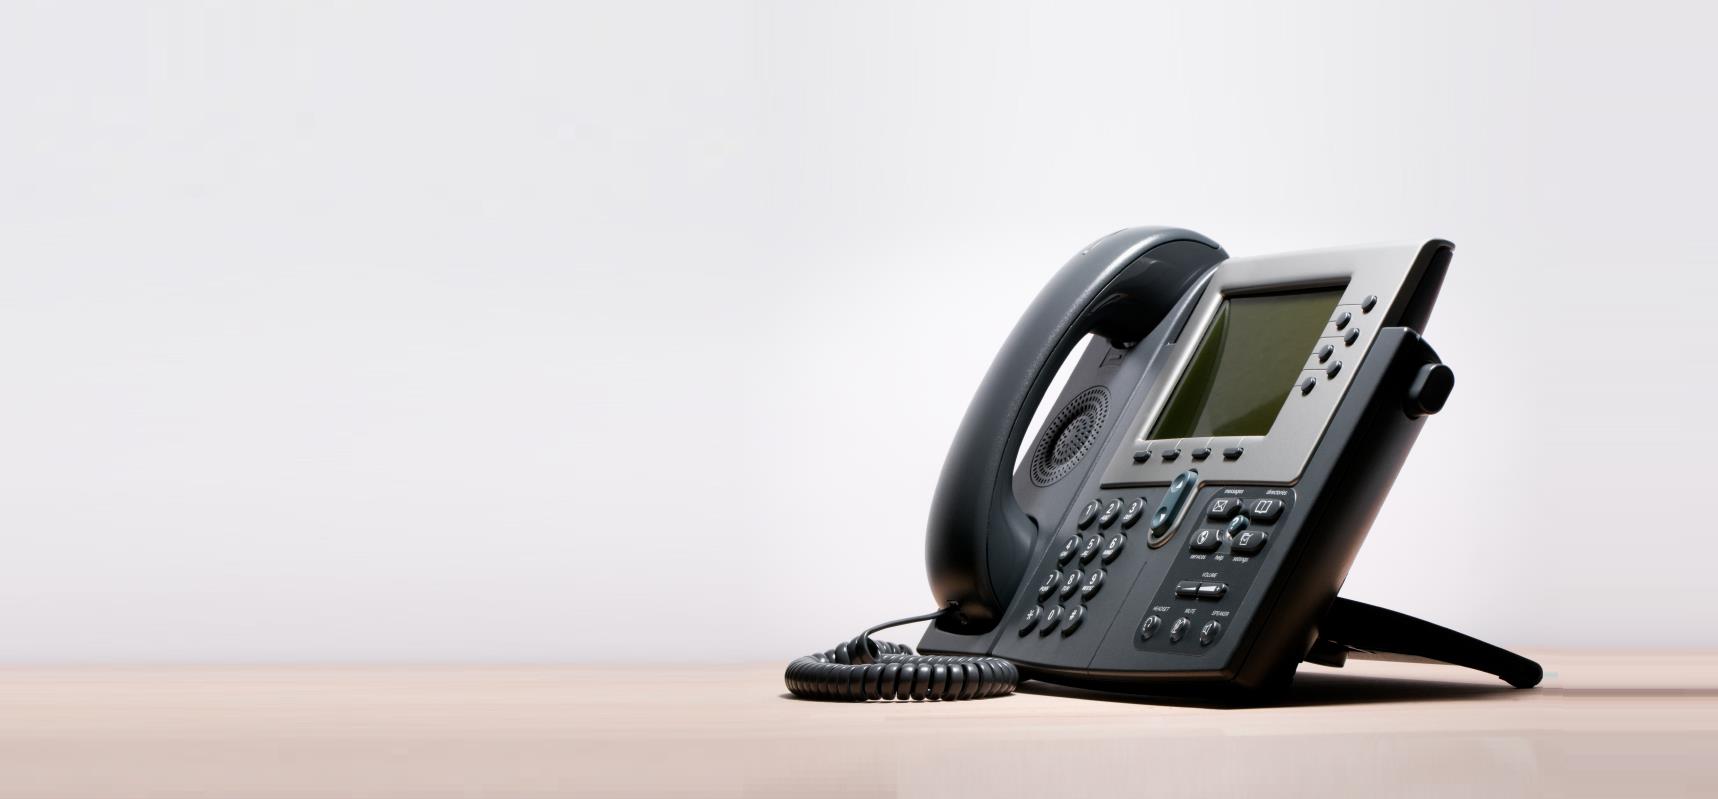 Telefonia internetowa VoIP Tanie rozmowy telefoniczne dla firm oparte na technologii VoIP stanowią alternatywę lub uzupełnienie dla telefonii tradycyjnej.